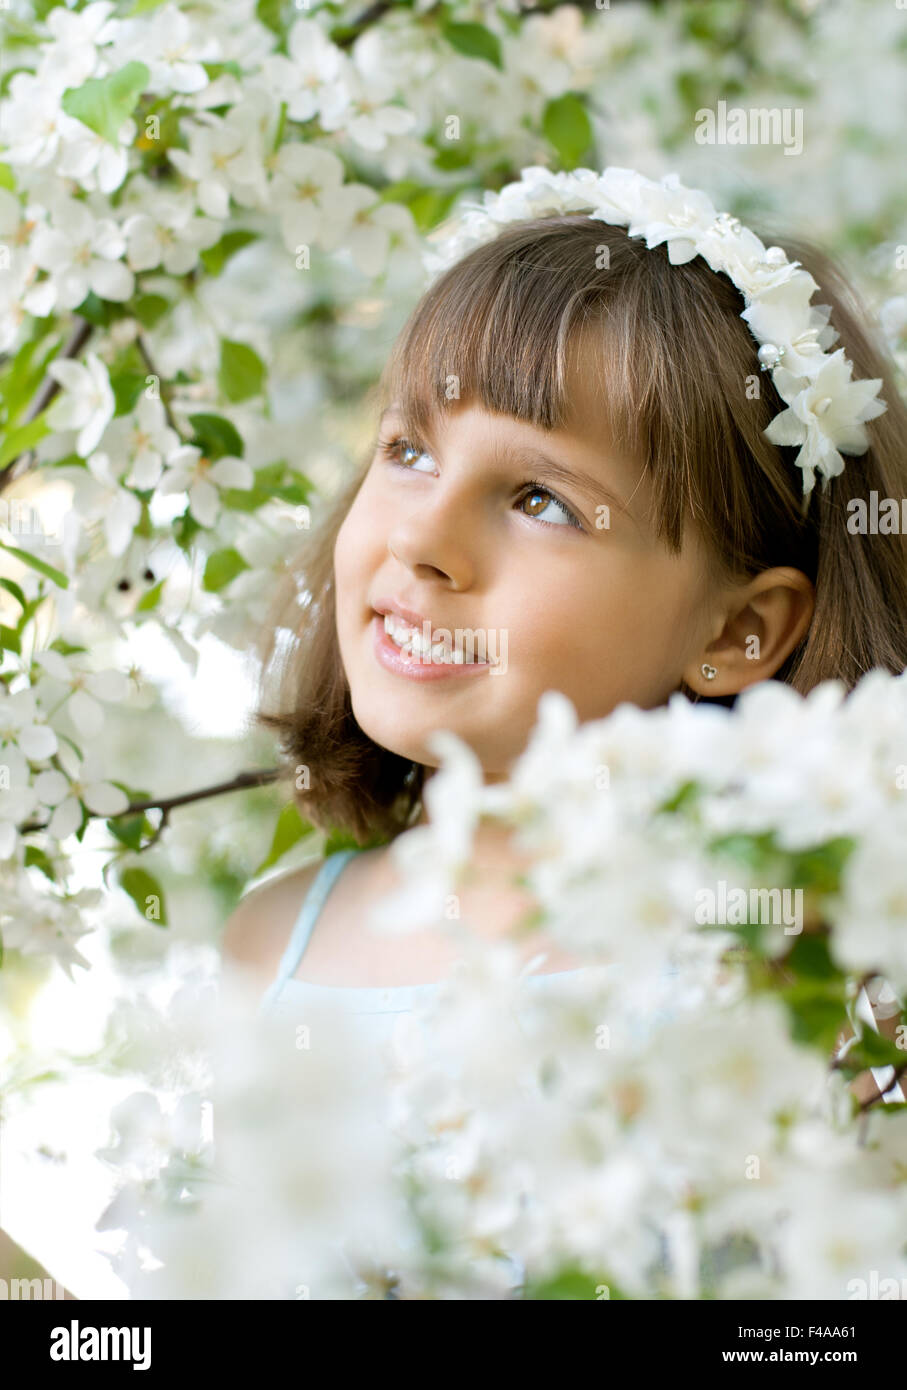 little girl Stock Photo